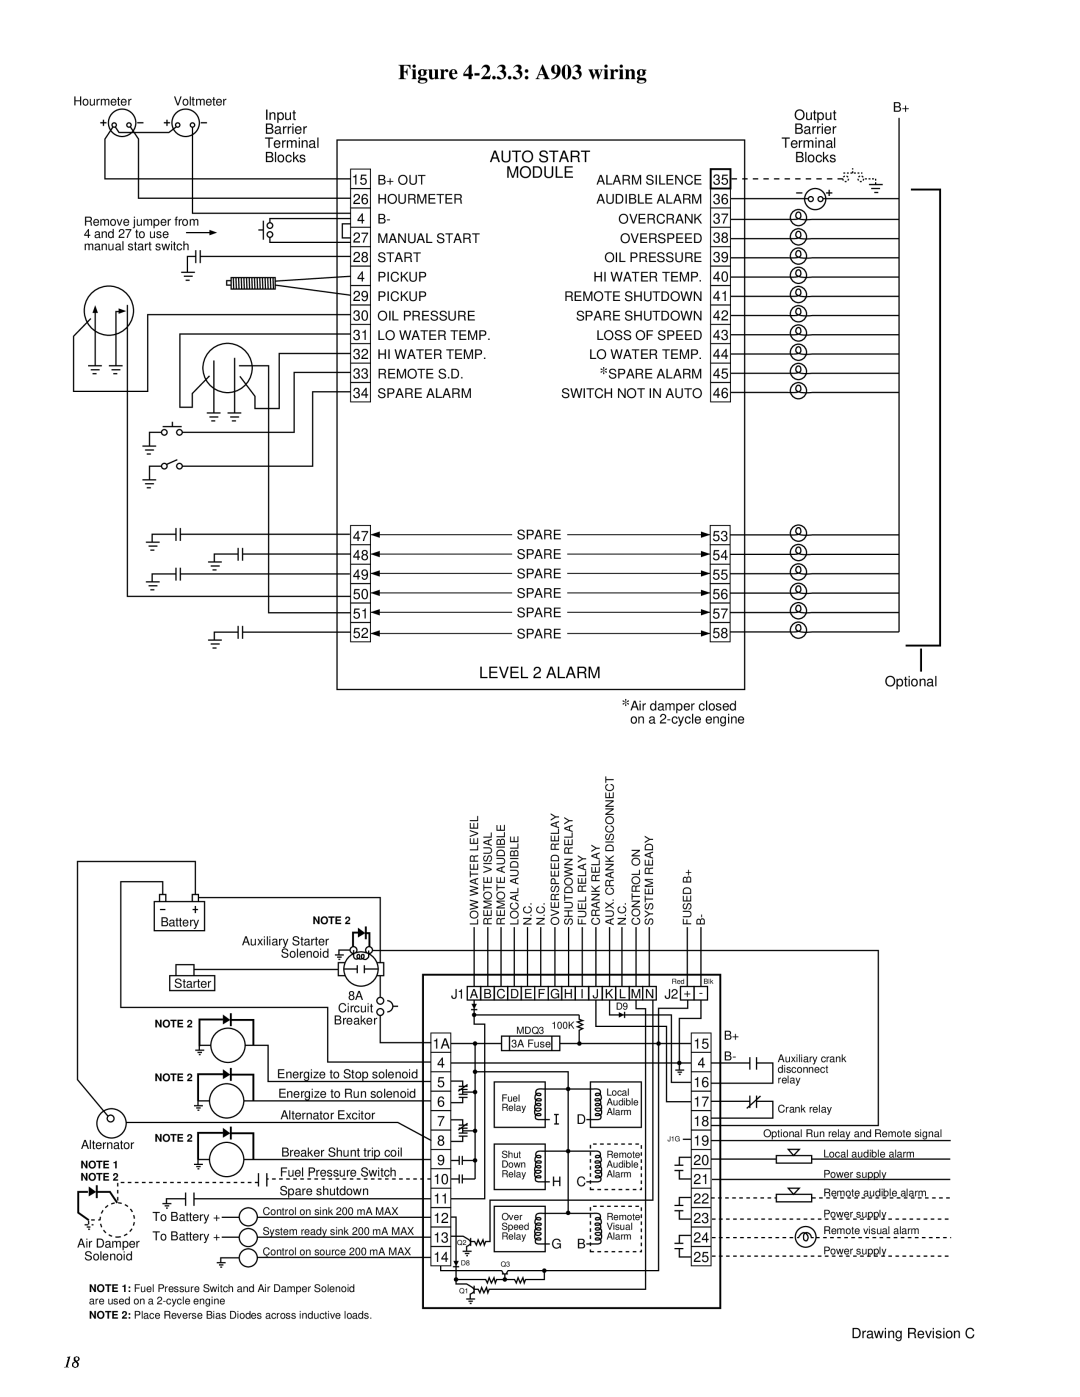 Murphy A900 Series manual 2.3.3 A903 wiring 